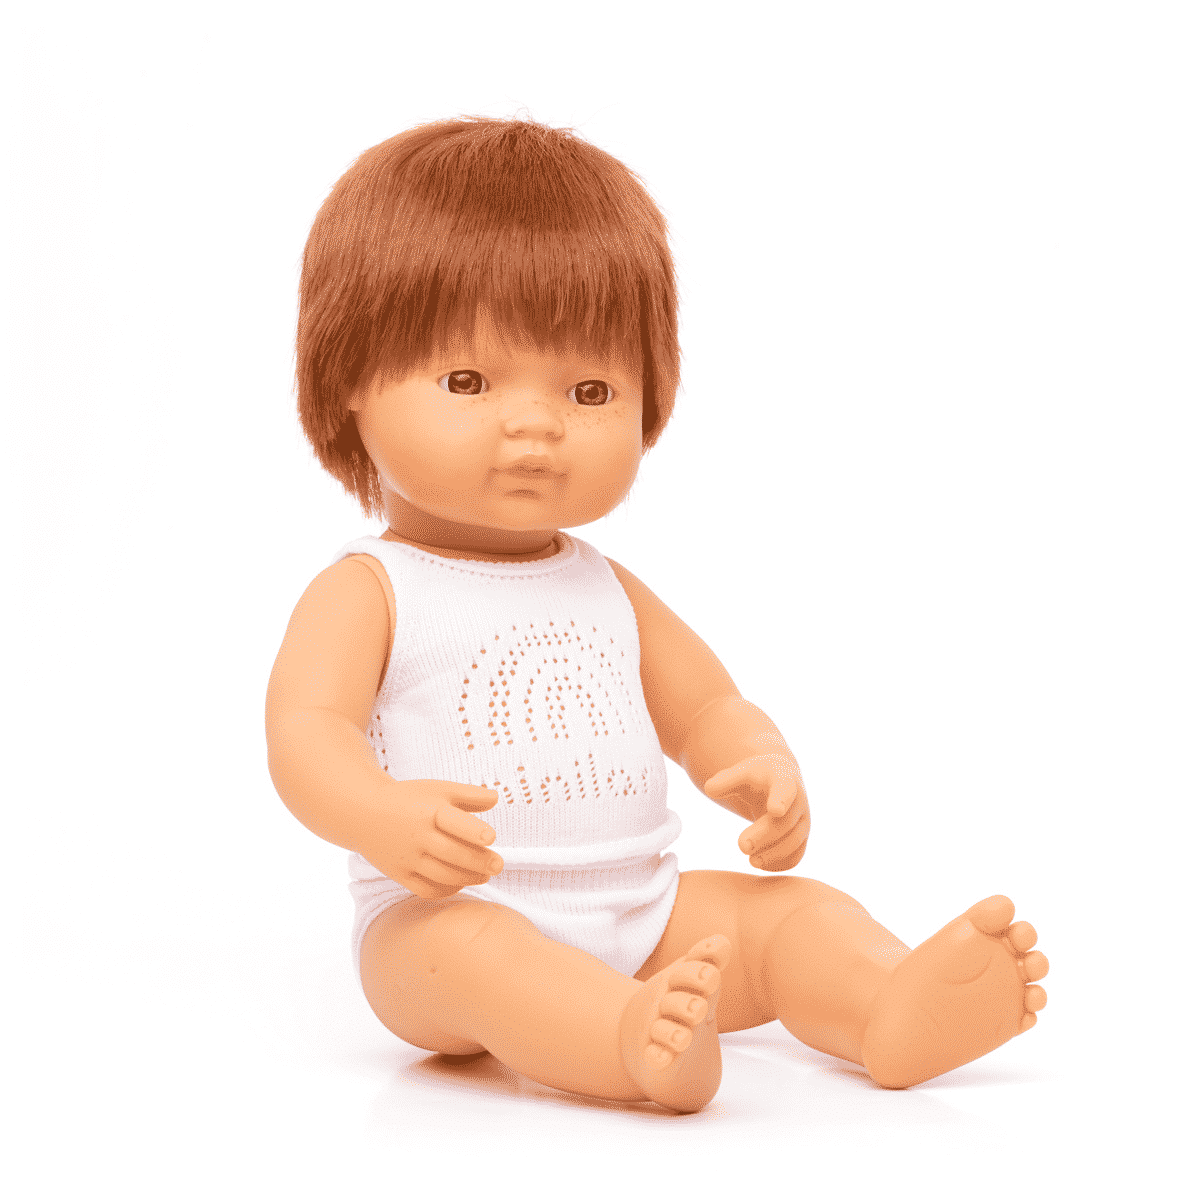 Pourquoi offrir une poupée sexuée à un enfant ? : poupée Corolle